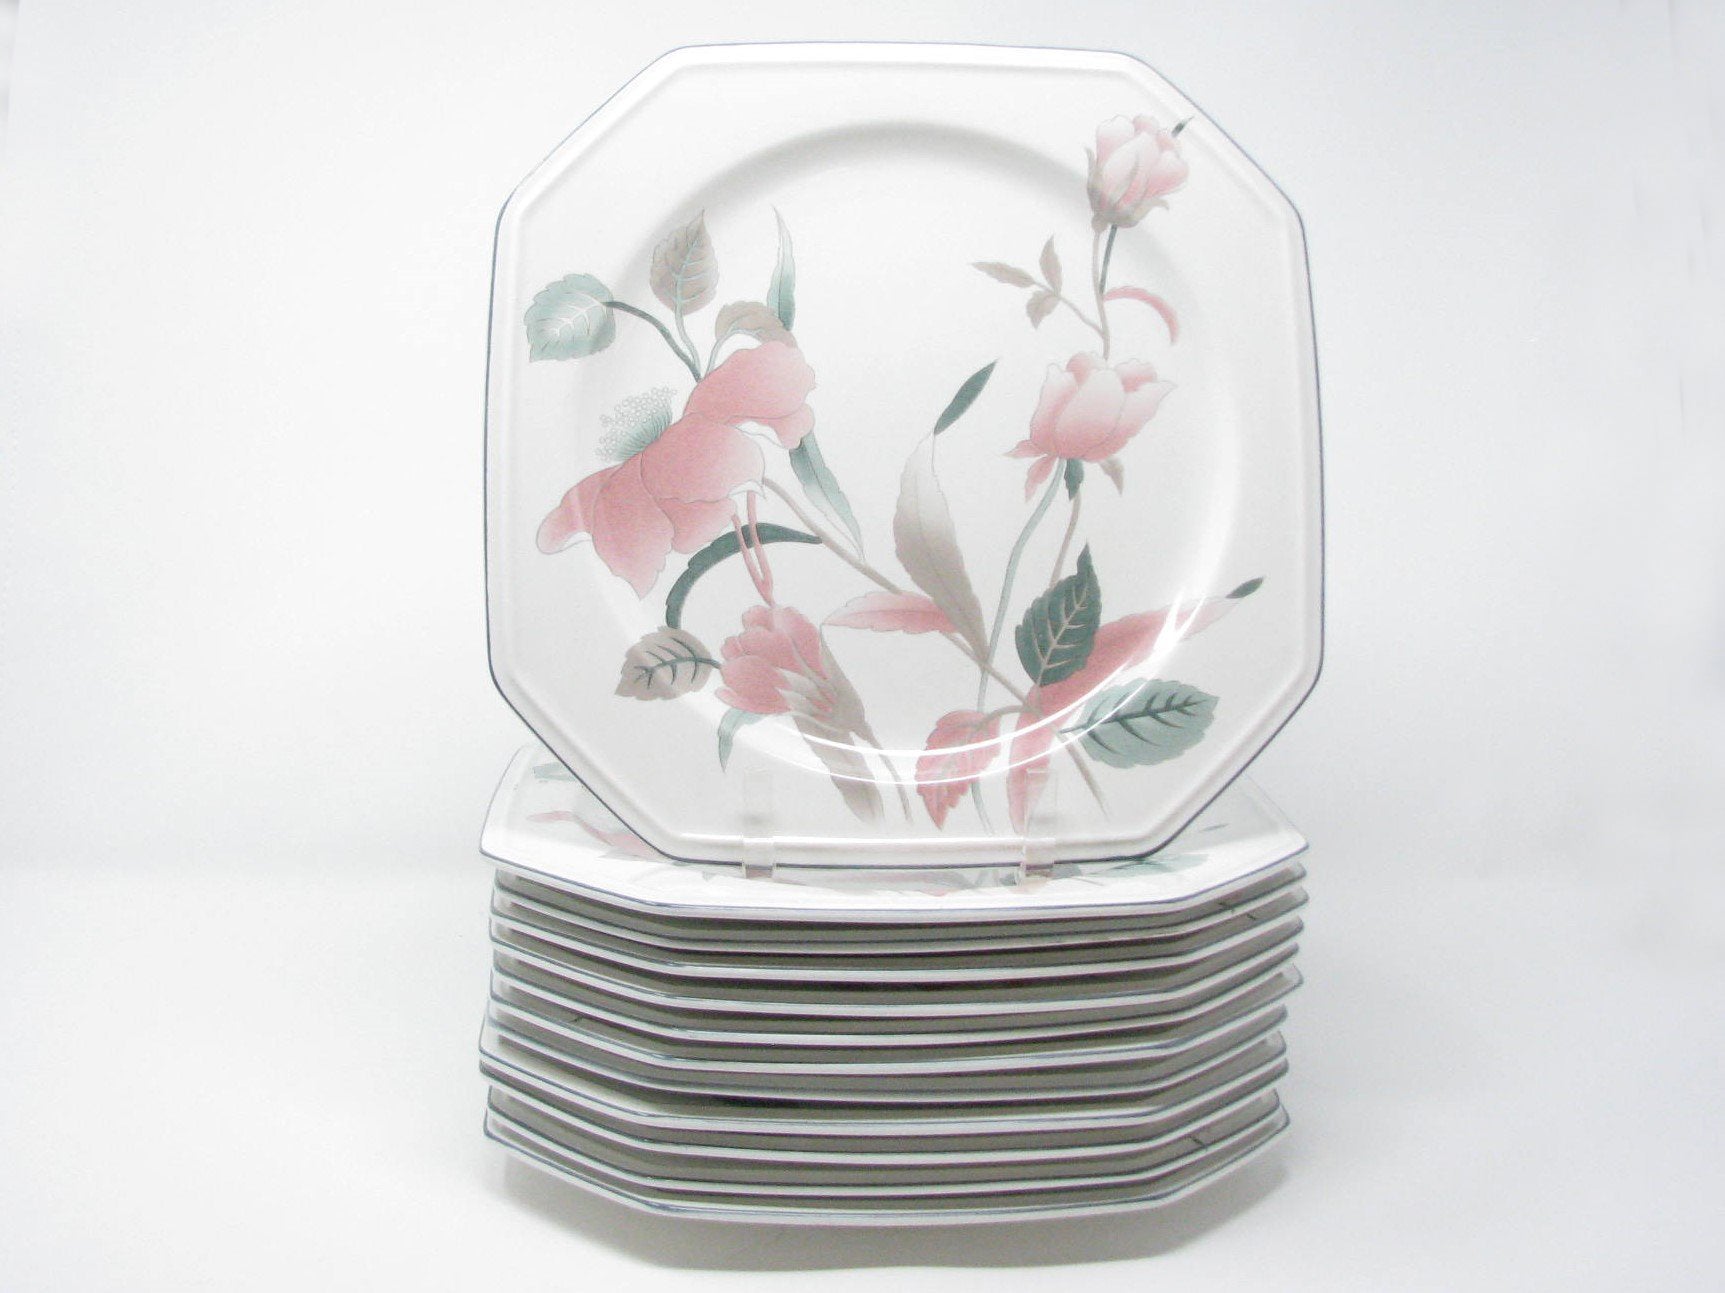 edgebrookhouse - Vintage Mikasa Continental Silk Flowers Dinner Plates - Set of 12